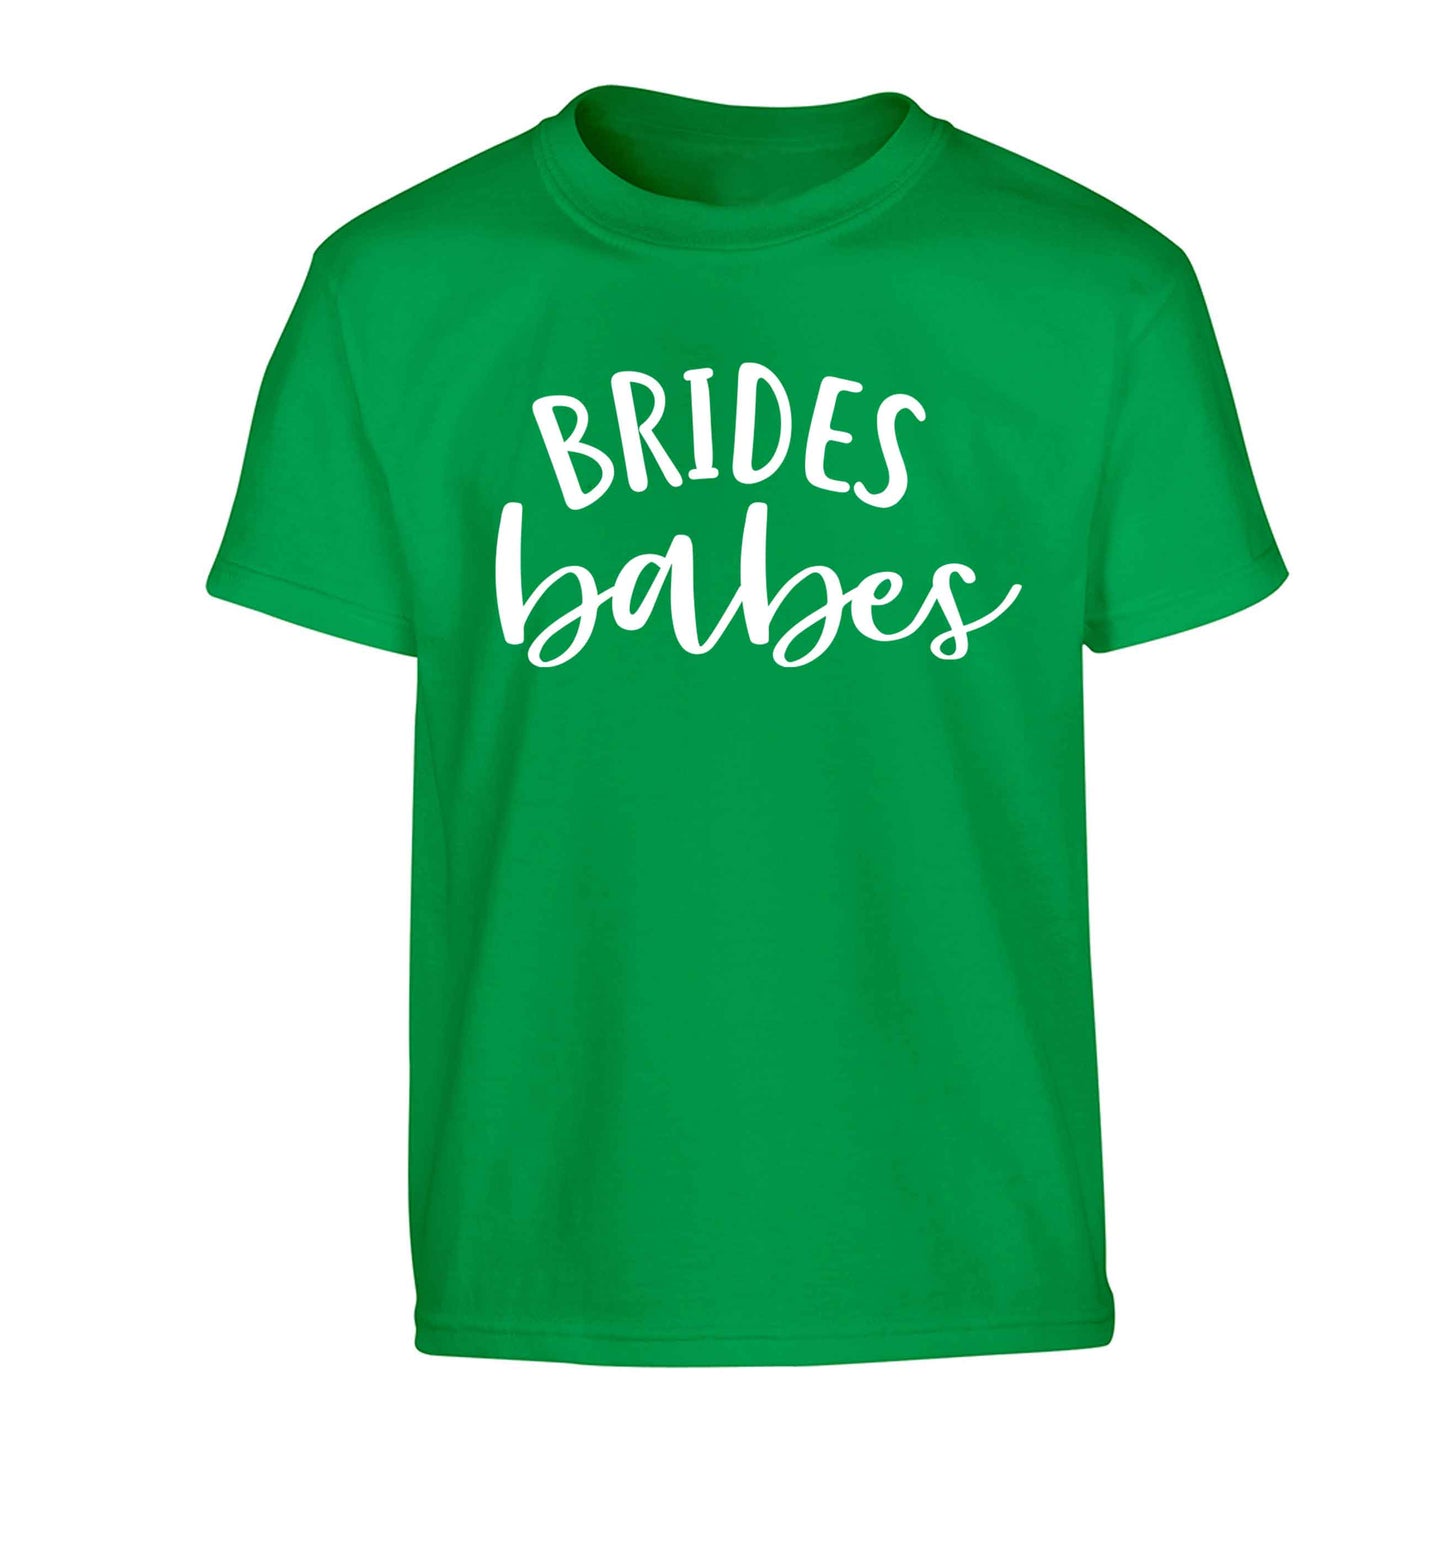 Brides Babes Children's green Tshirt 12-13 Years